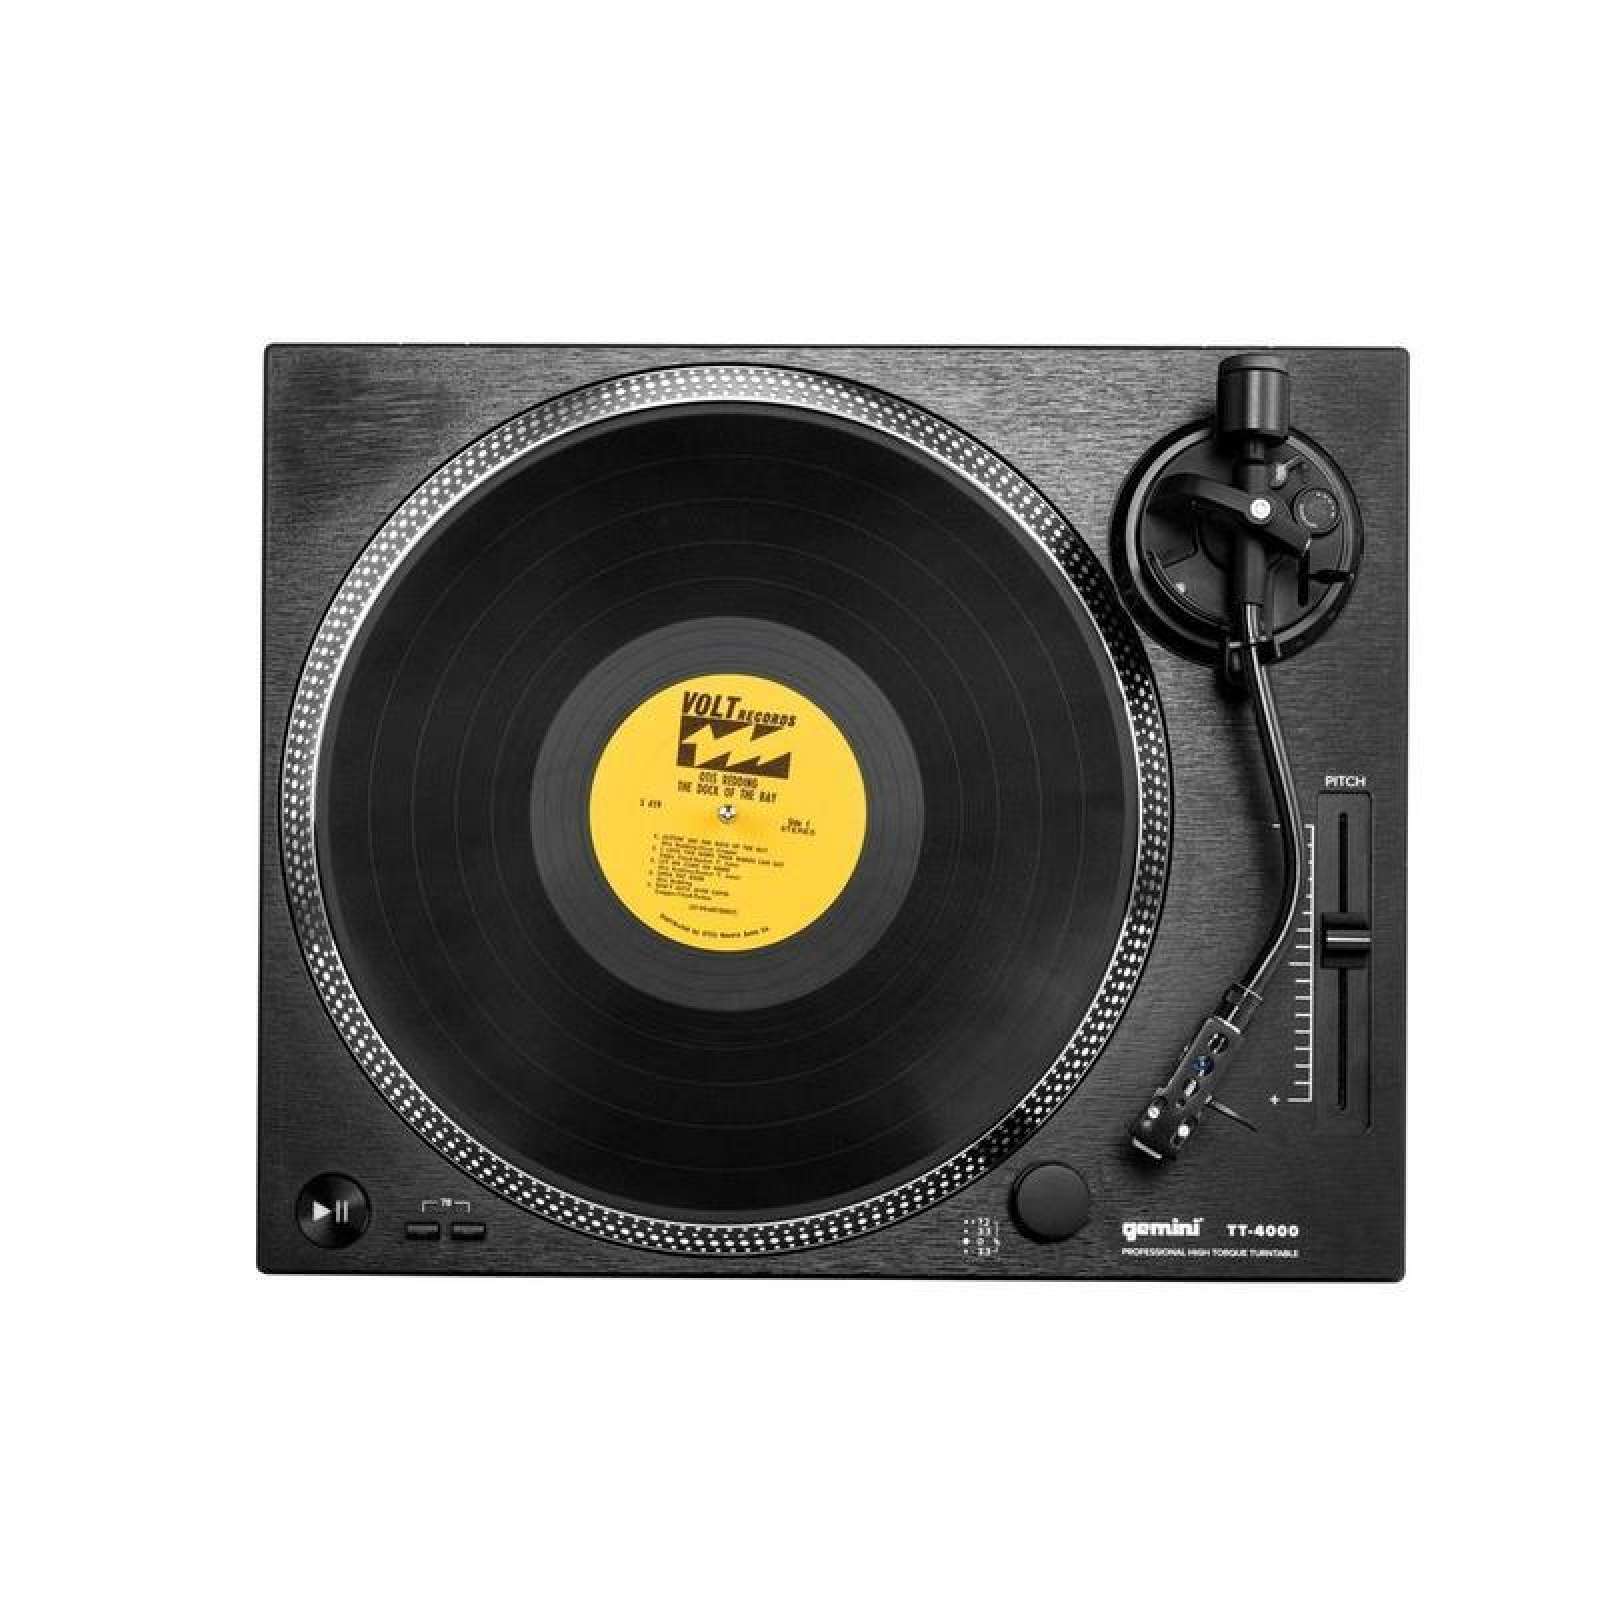 GEMINI TT-4000 - VINYL DJ DECK - REFURBISHED